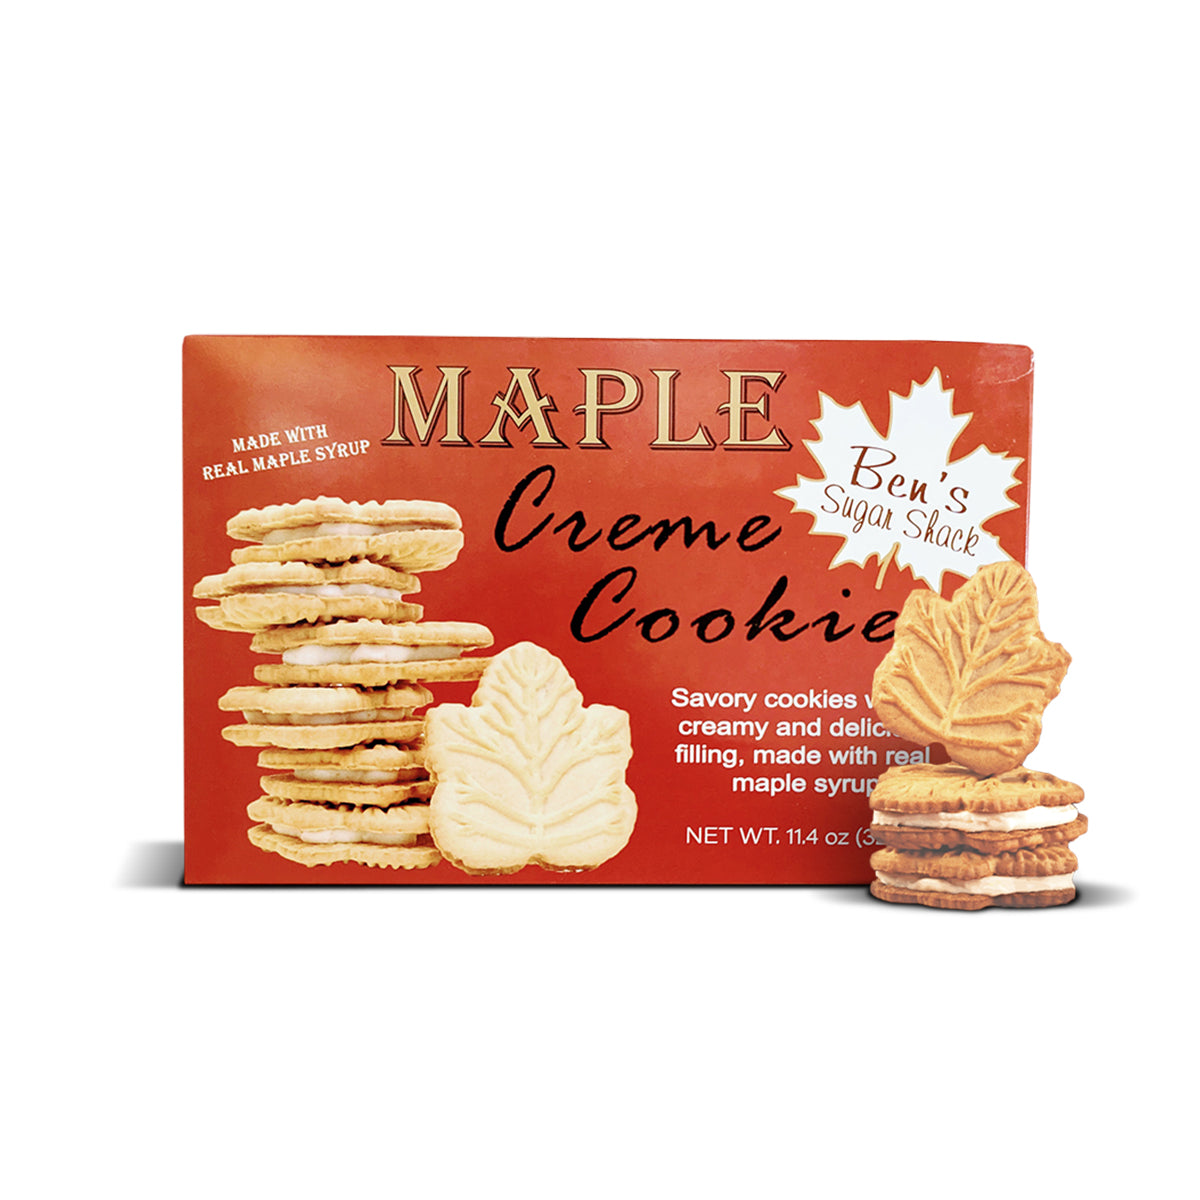 Maple Leaf Cookies 11.4 oz